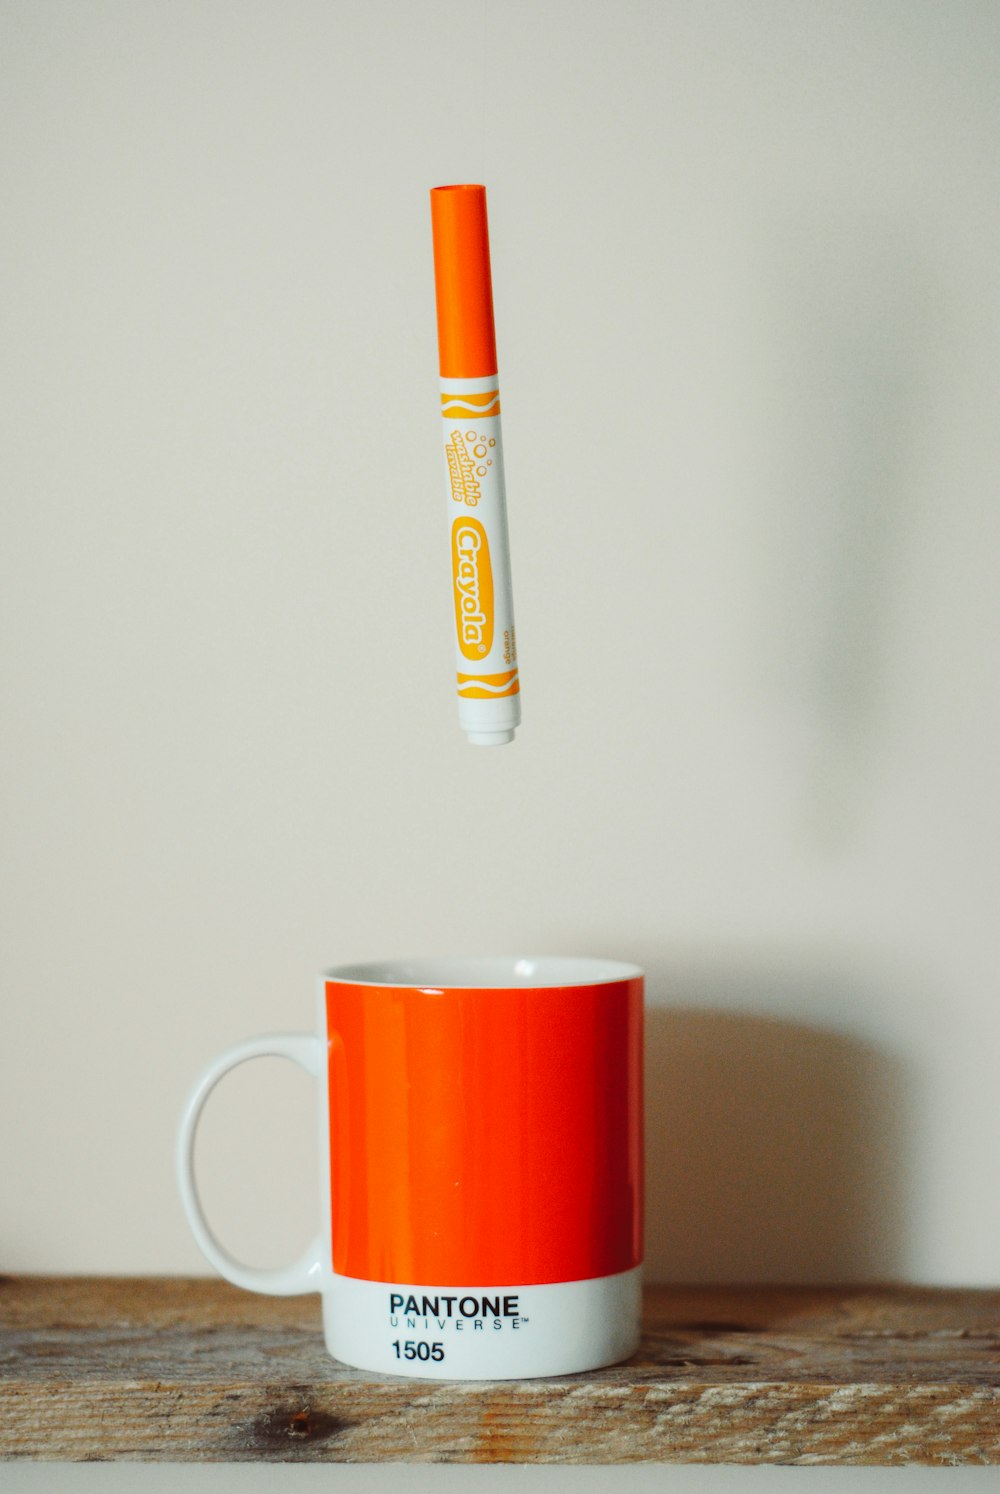 머그잔 위의 오렌지 크레욜라 크레용 펜